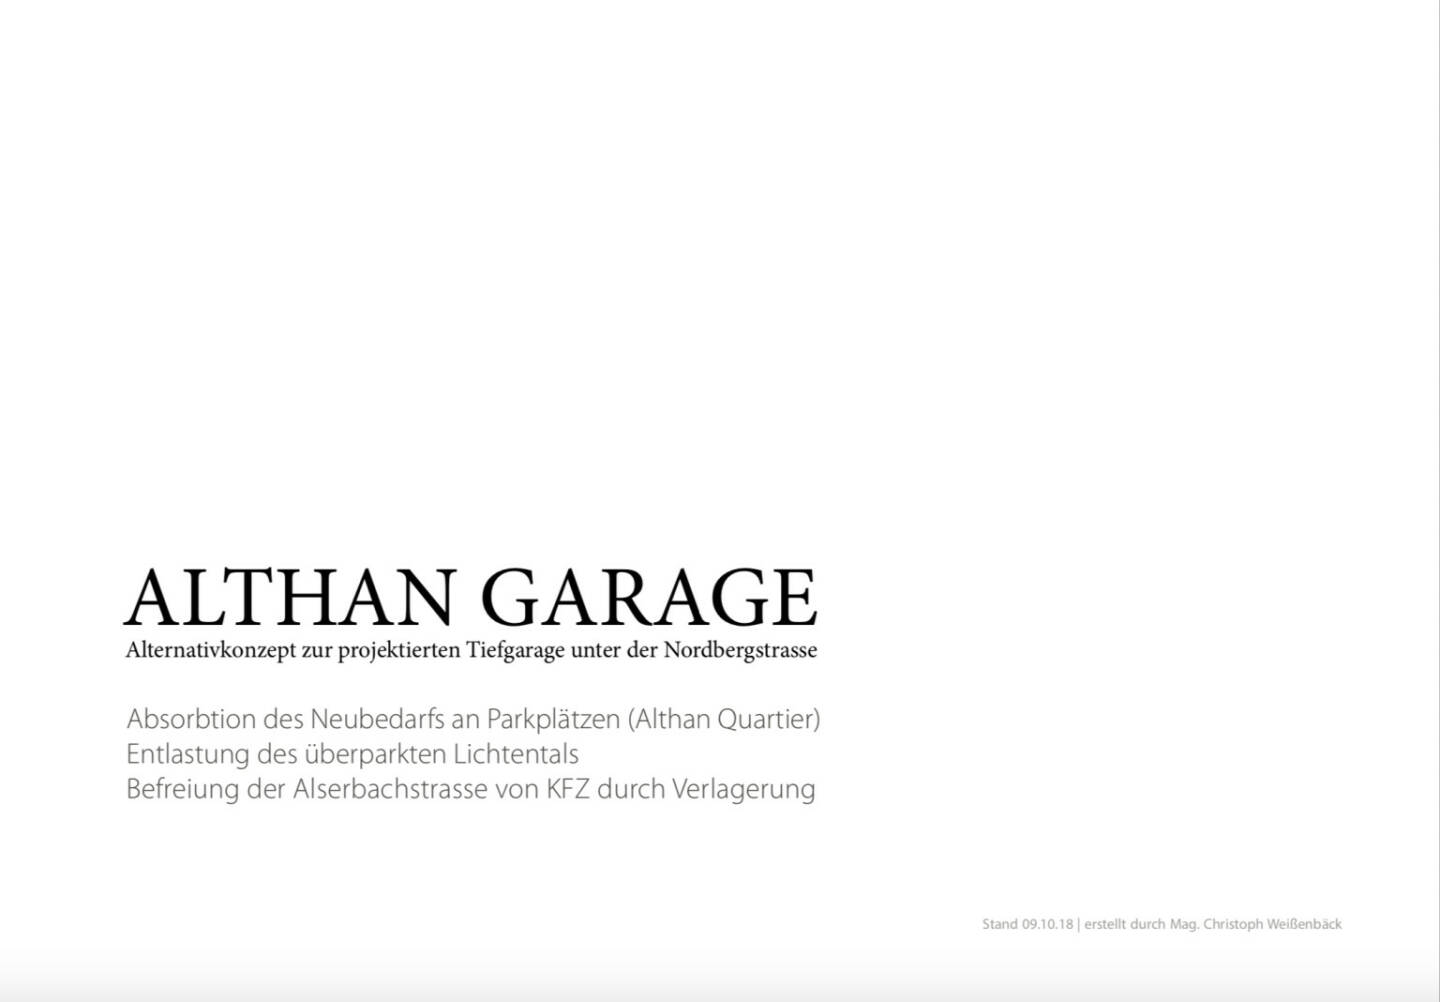 Althangrund: Althan Garage alternativ